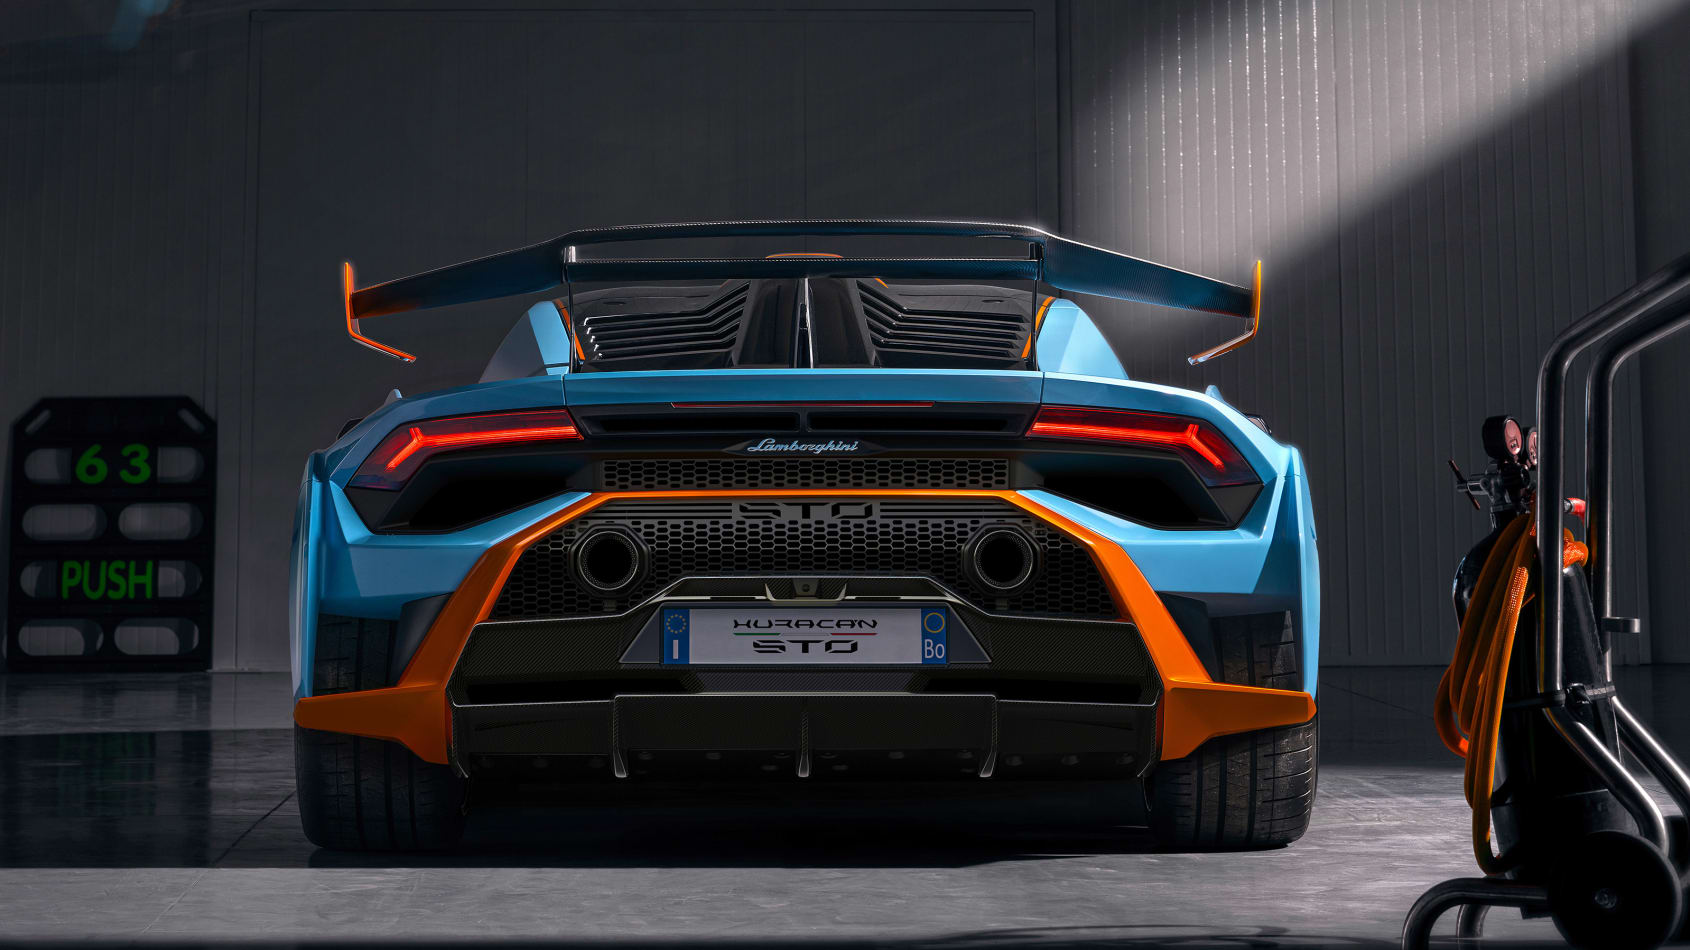 aria-label="Lamborghini Huracán STO 7"